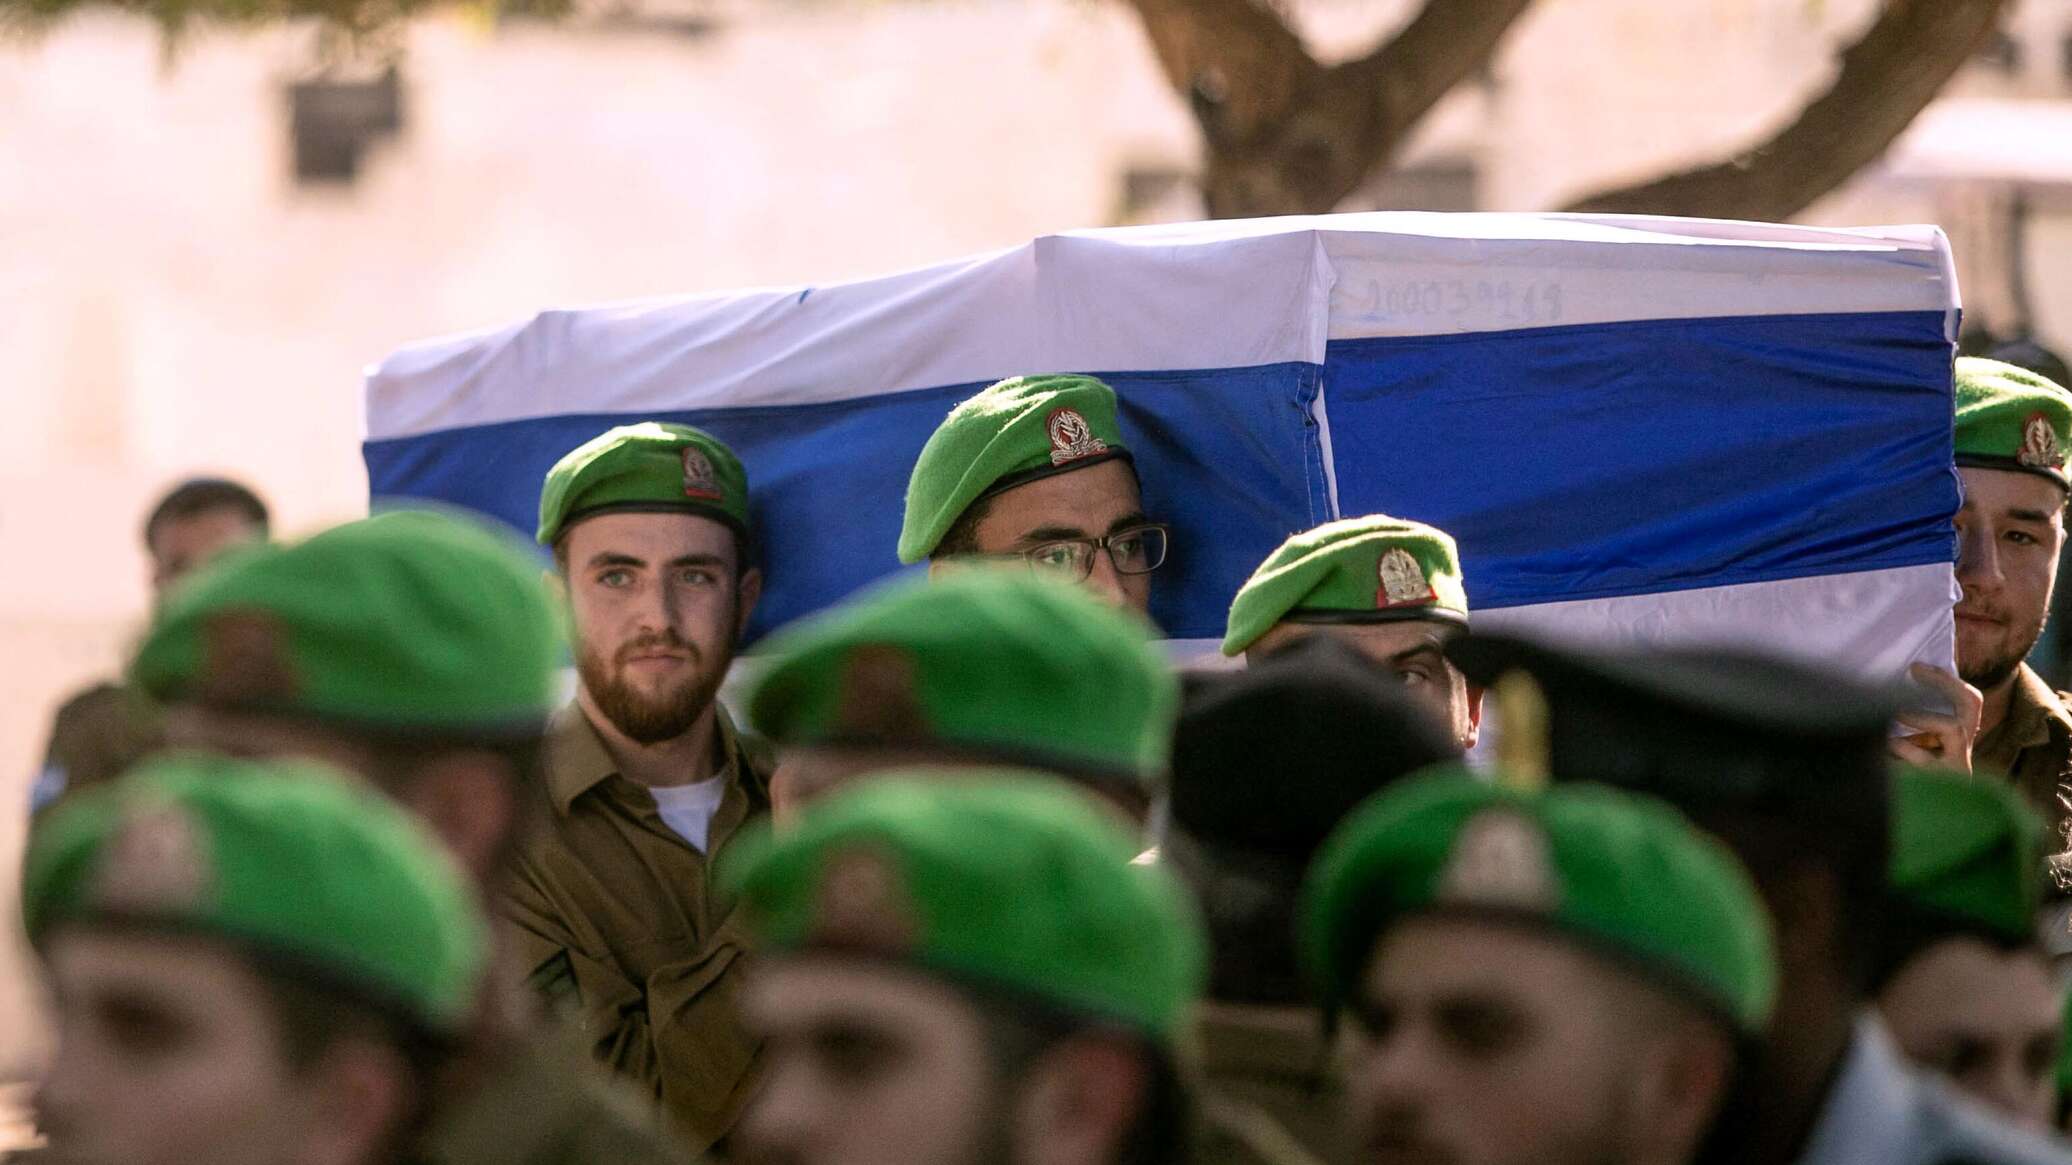 مصادر إسرائيلية: الترويج لعدم اهتمام حماس بصفقة المحتجزين غير صحيح وفريقنا يتعنت في شروطه